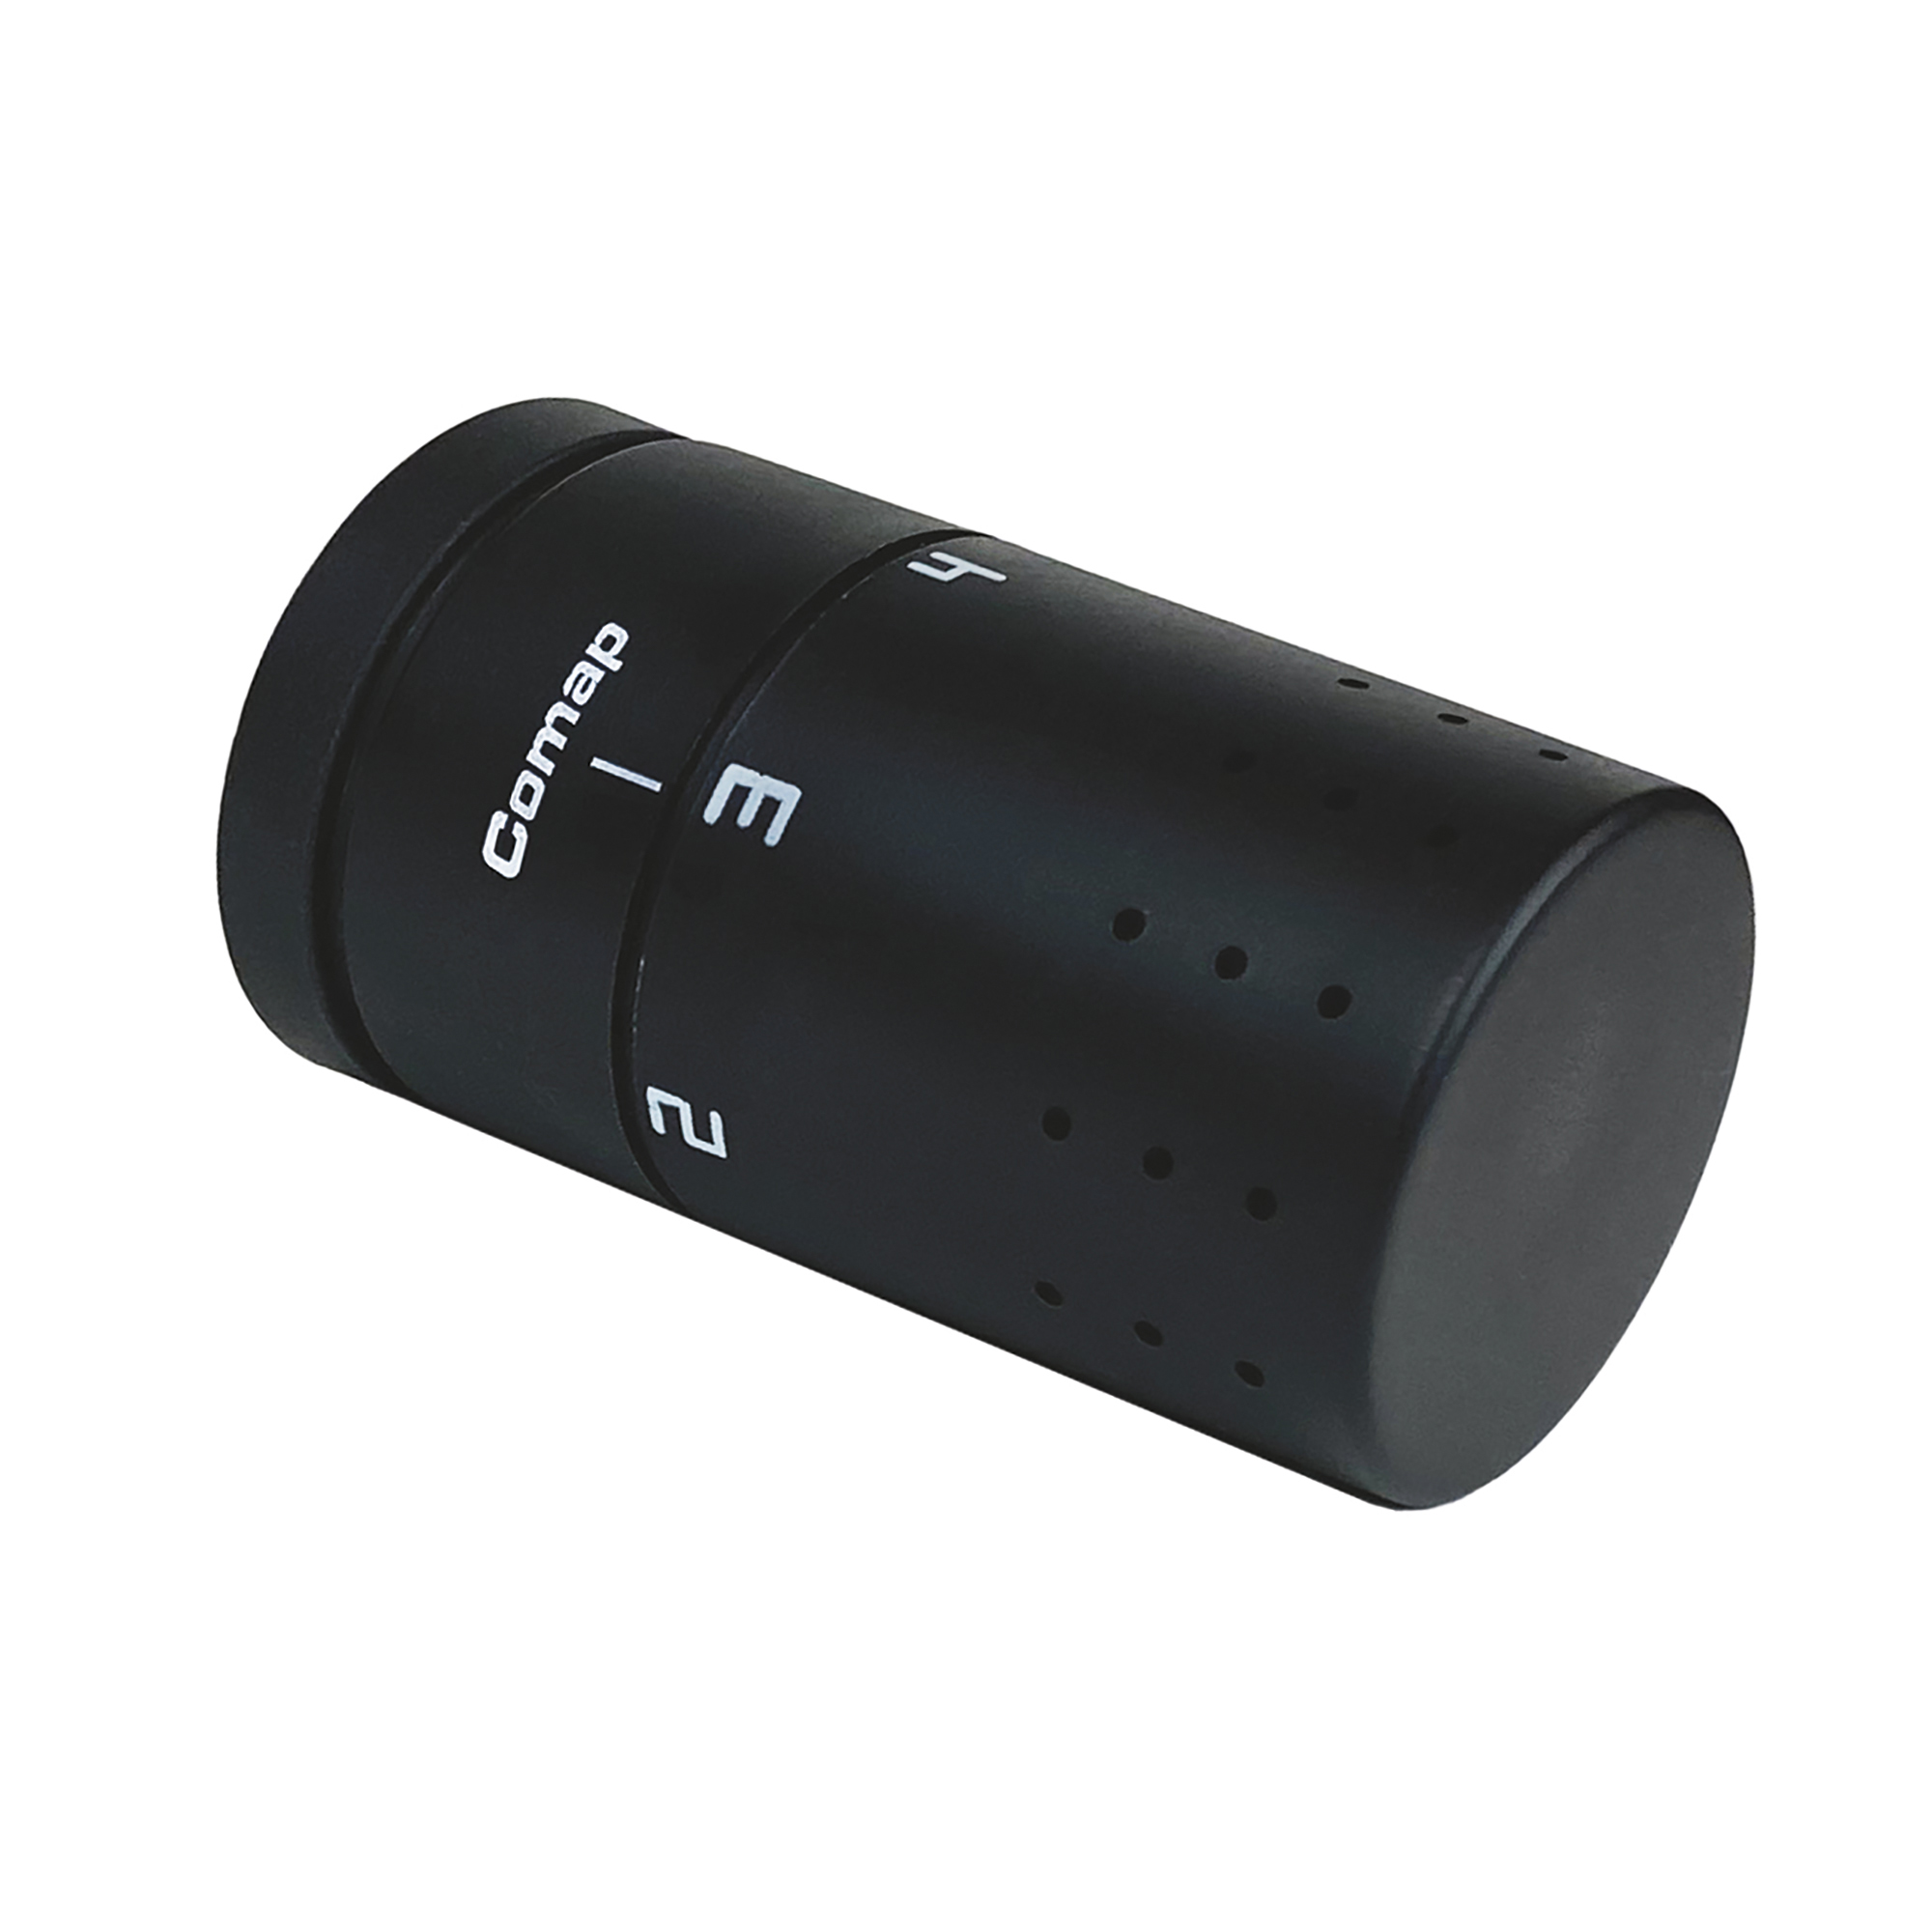 CP102300 Sensitive Design-Thermostatkopf mit Flüssigkeitsfühler